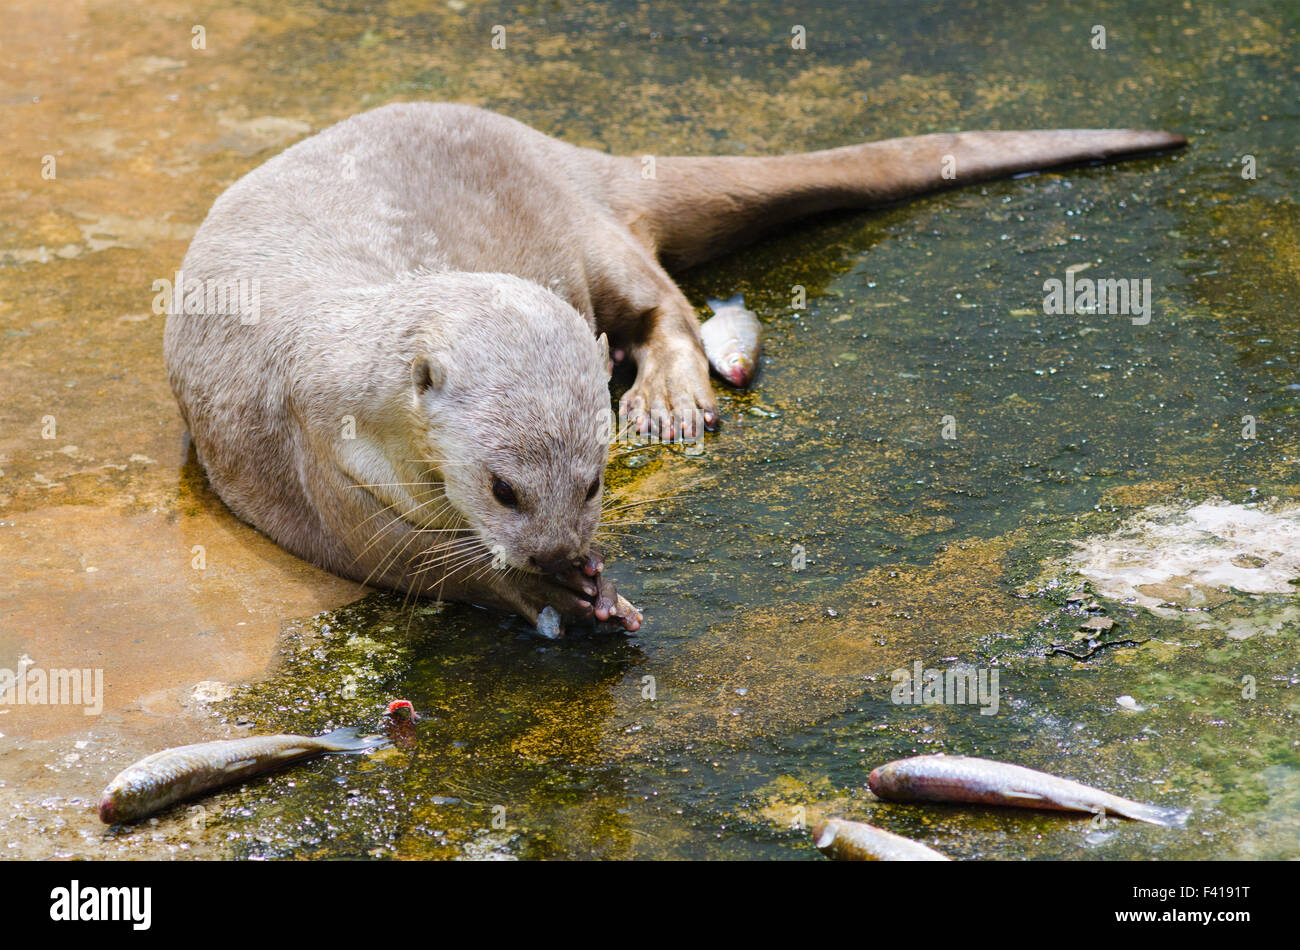 European otter eats fish Stock Photo